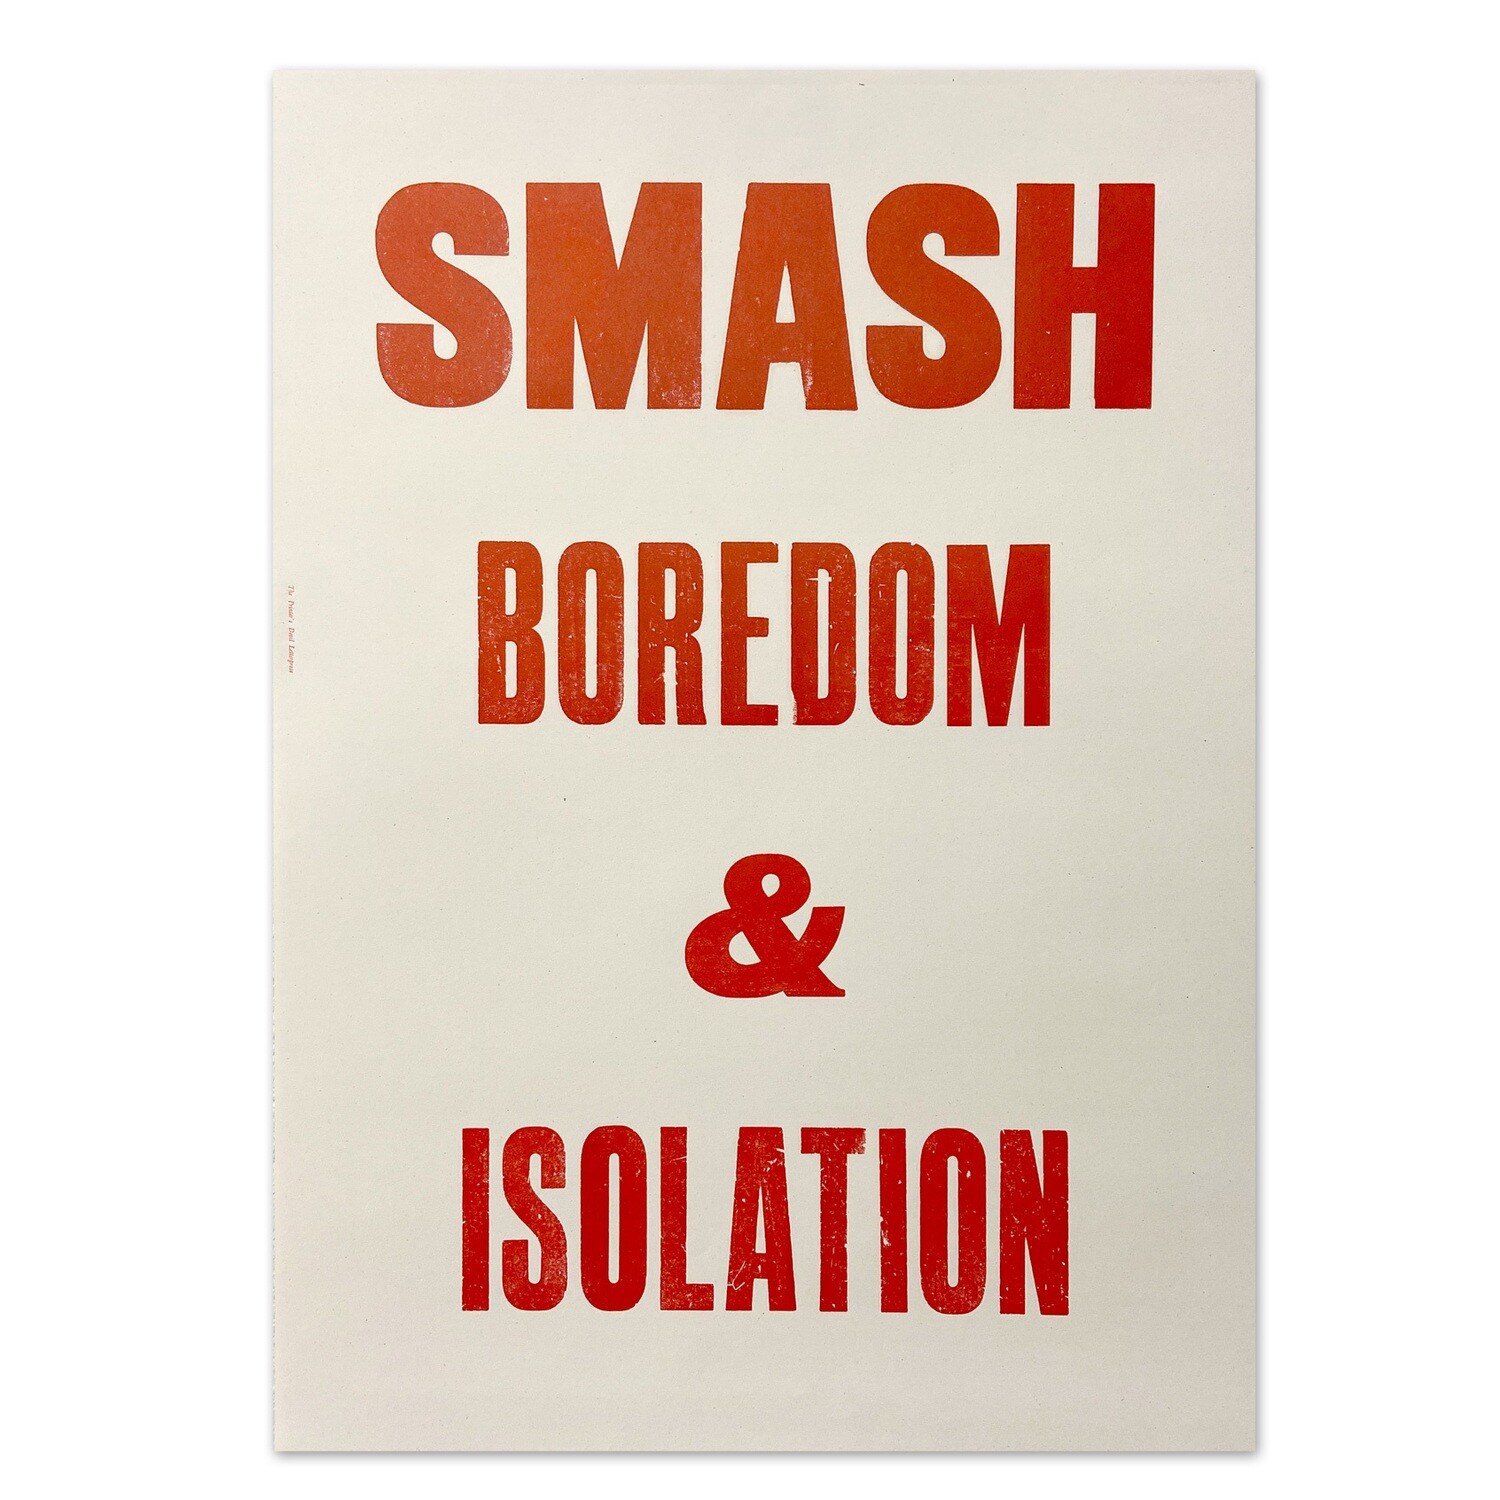 Smash Boredom (Red)